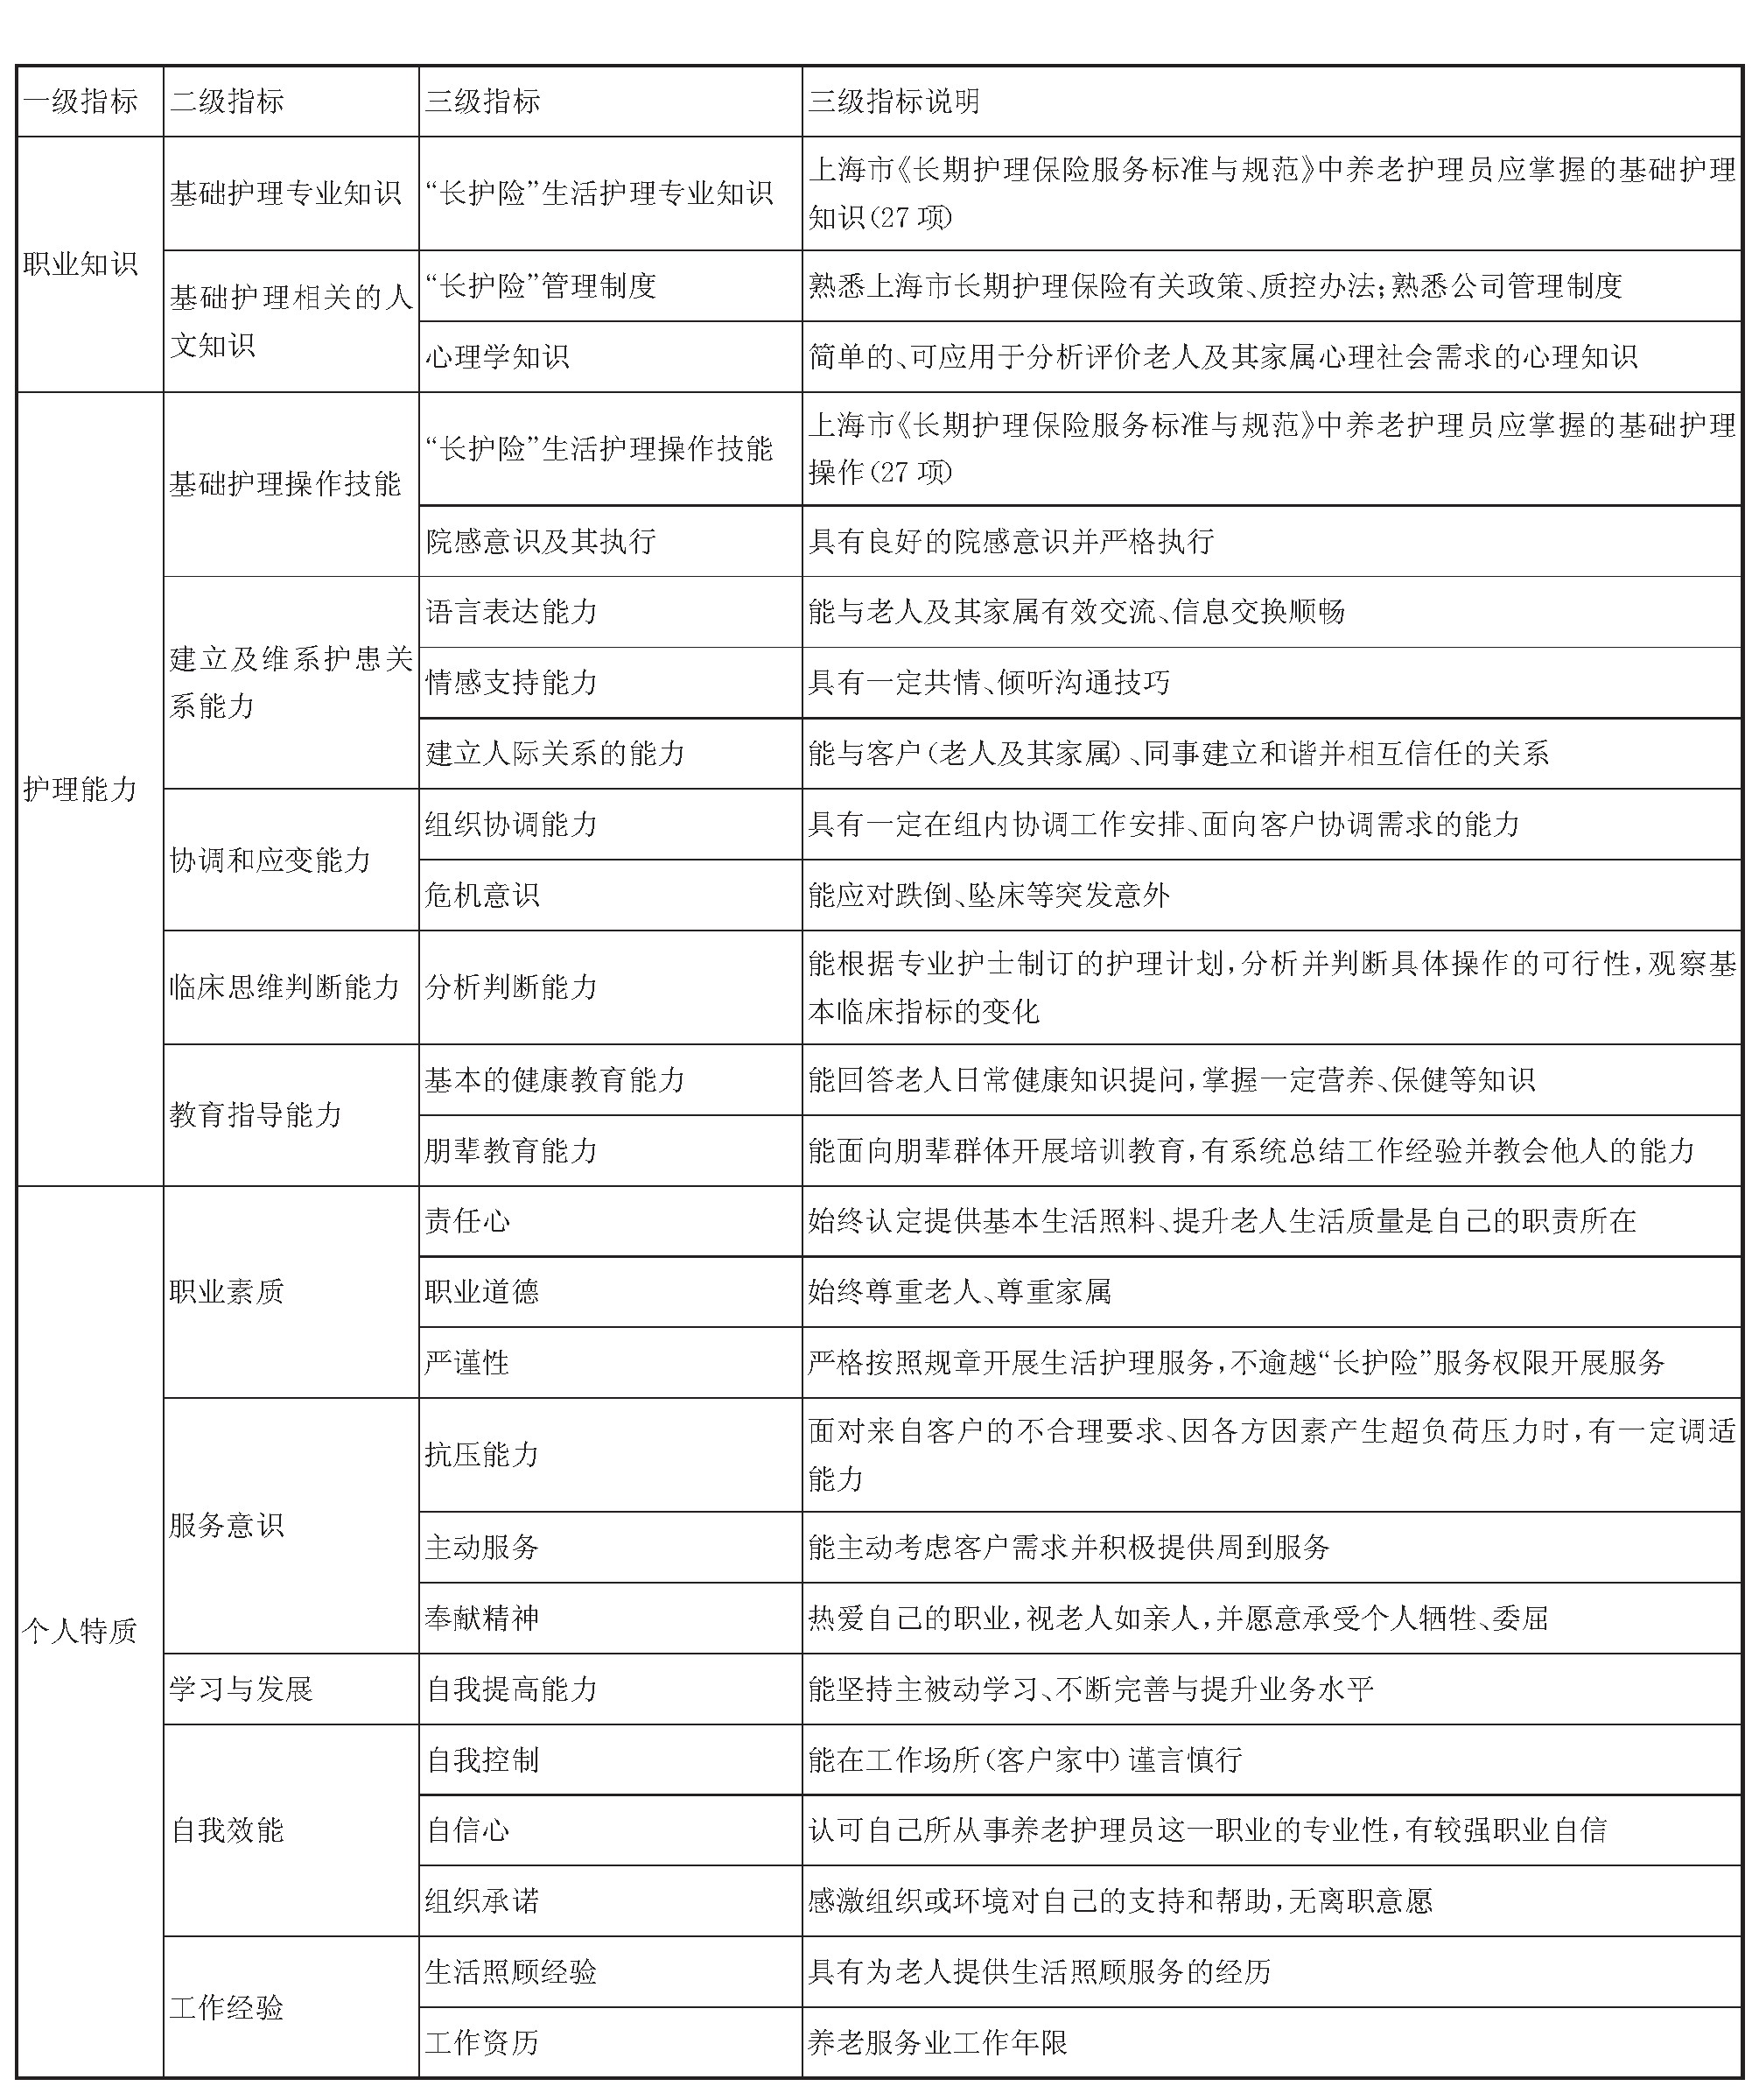 上海市養老護理員核心勝任力評價指標體系.jpg